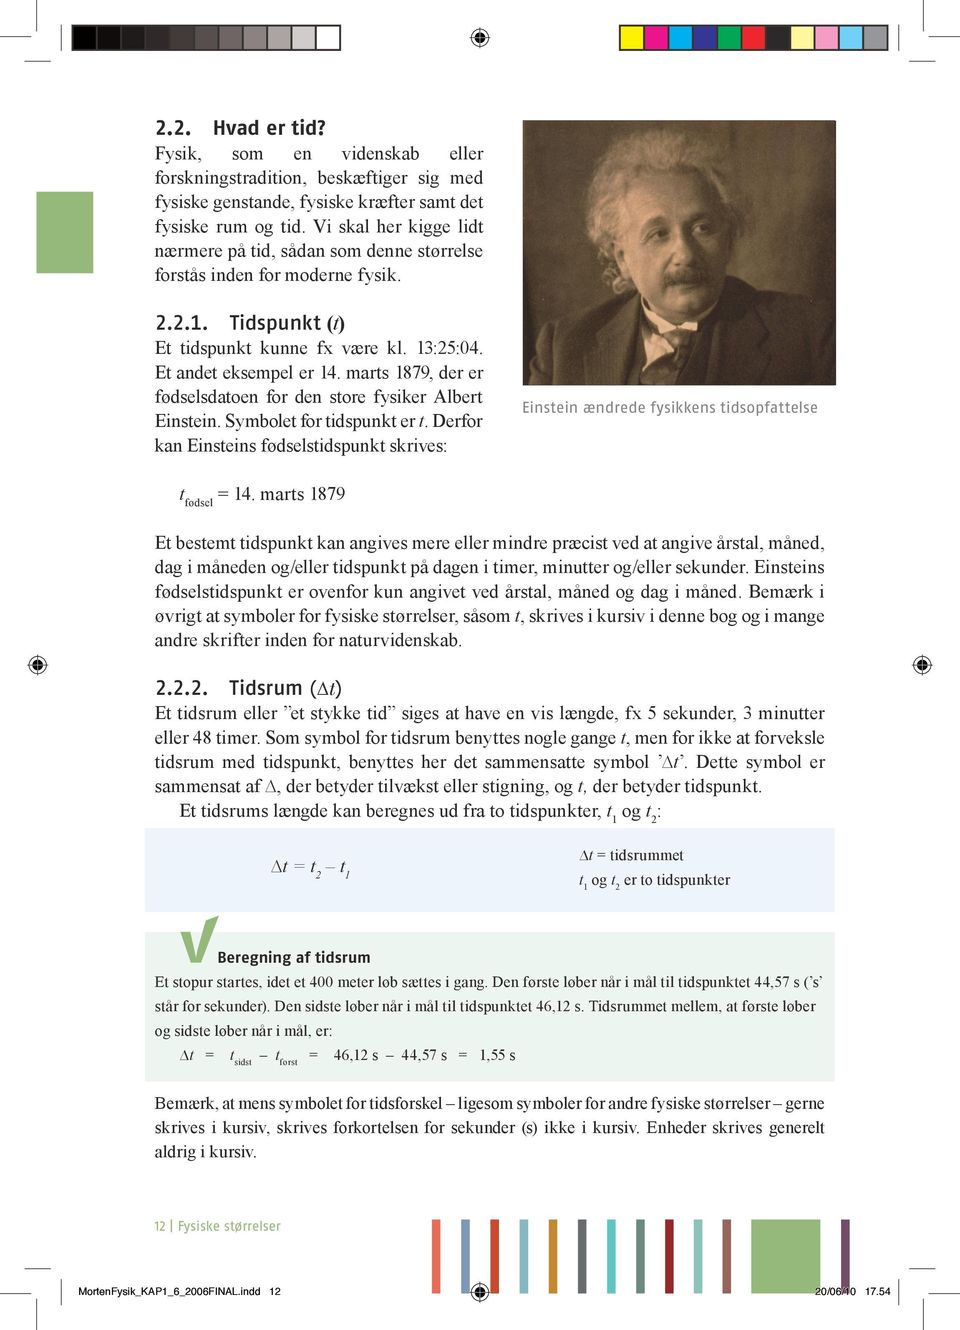 marts 1879, der er fødselsdatoen for den store fysiker Albert Einstein. Symbolet for tidspunkt er t.